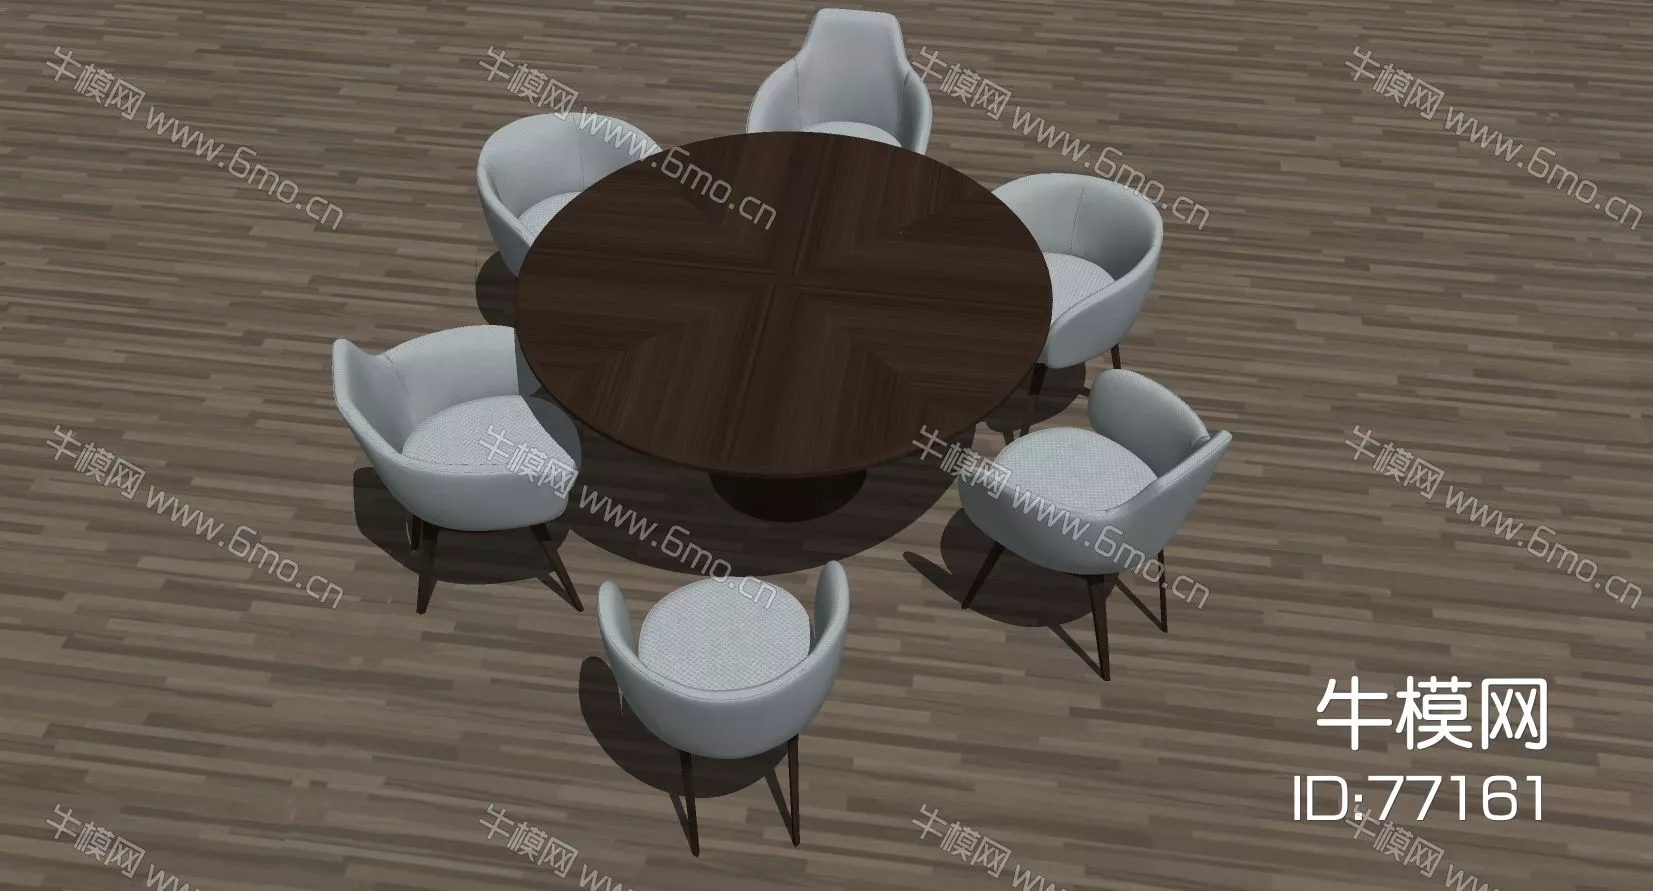 MODERN DINING TABLE SET - SKETCHUP 3D MODEL - ENSCAPE - 77161